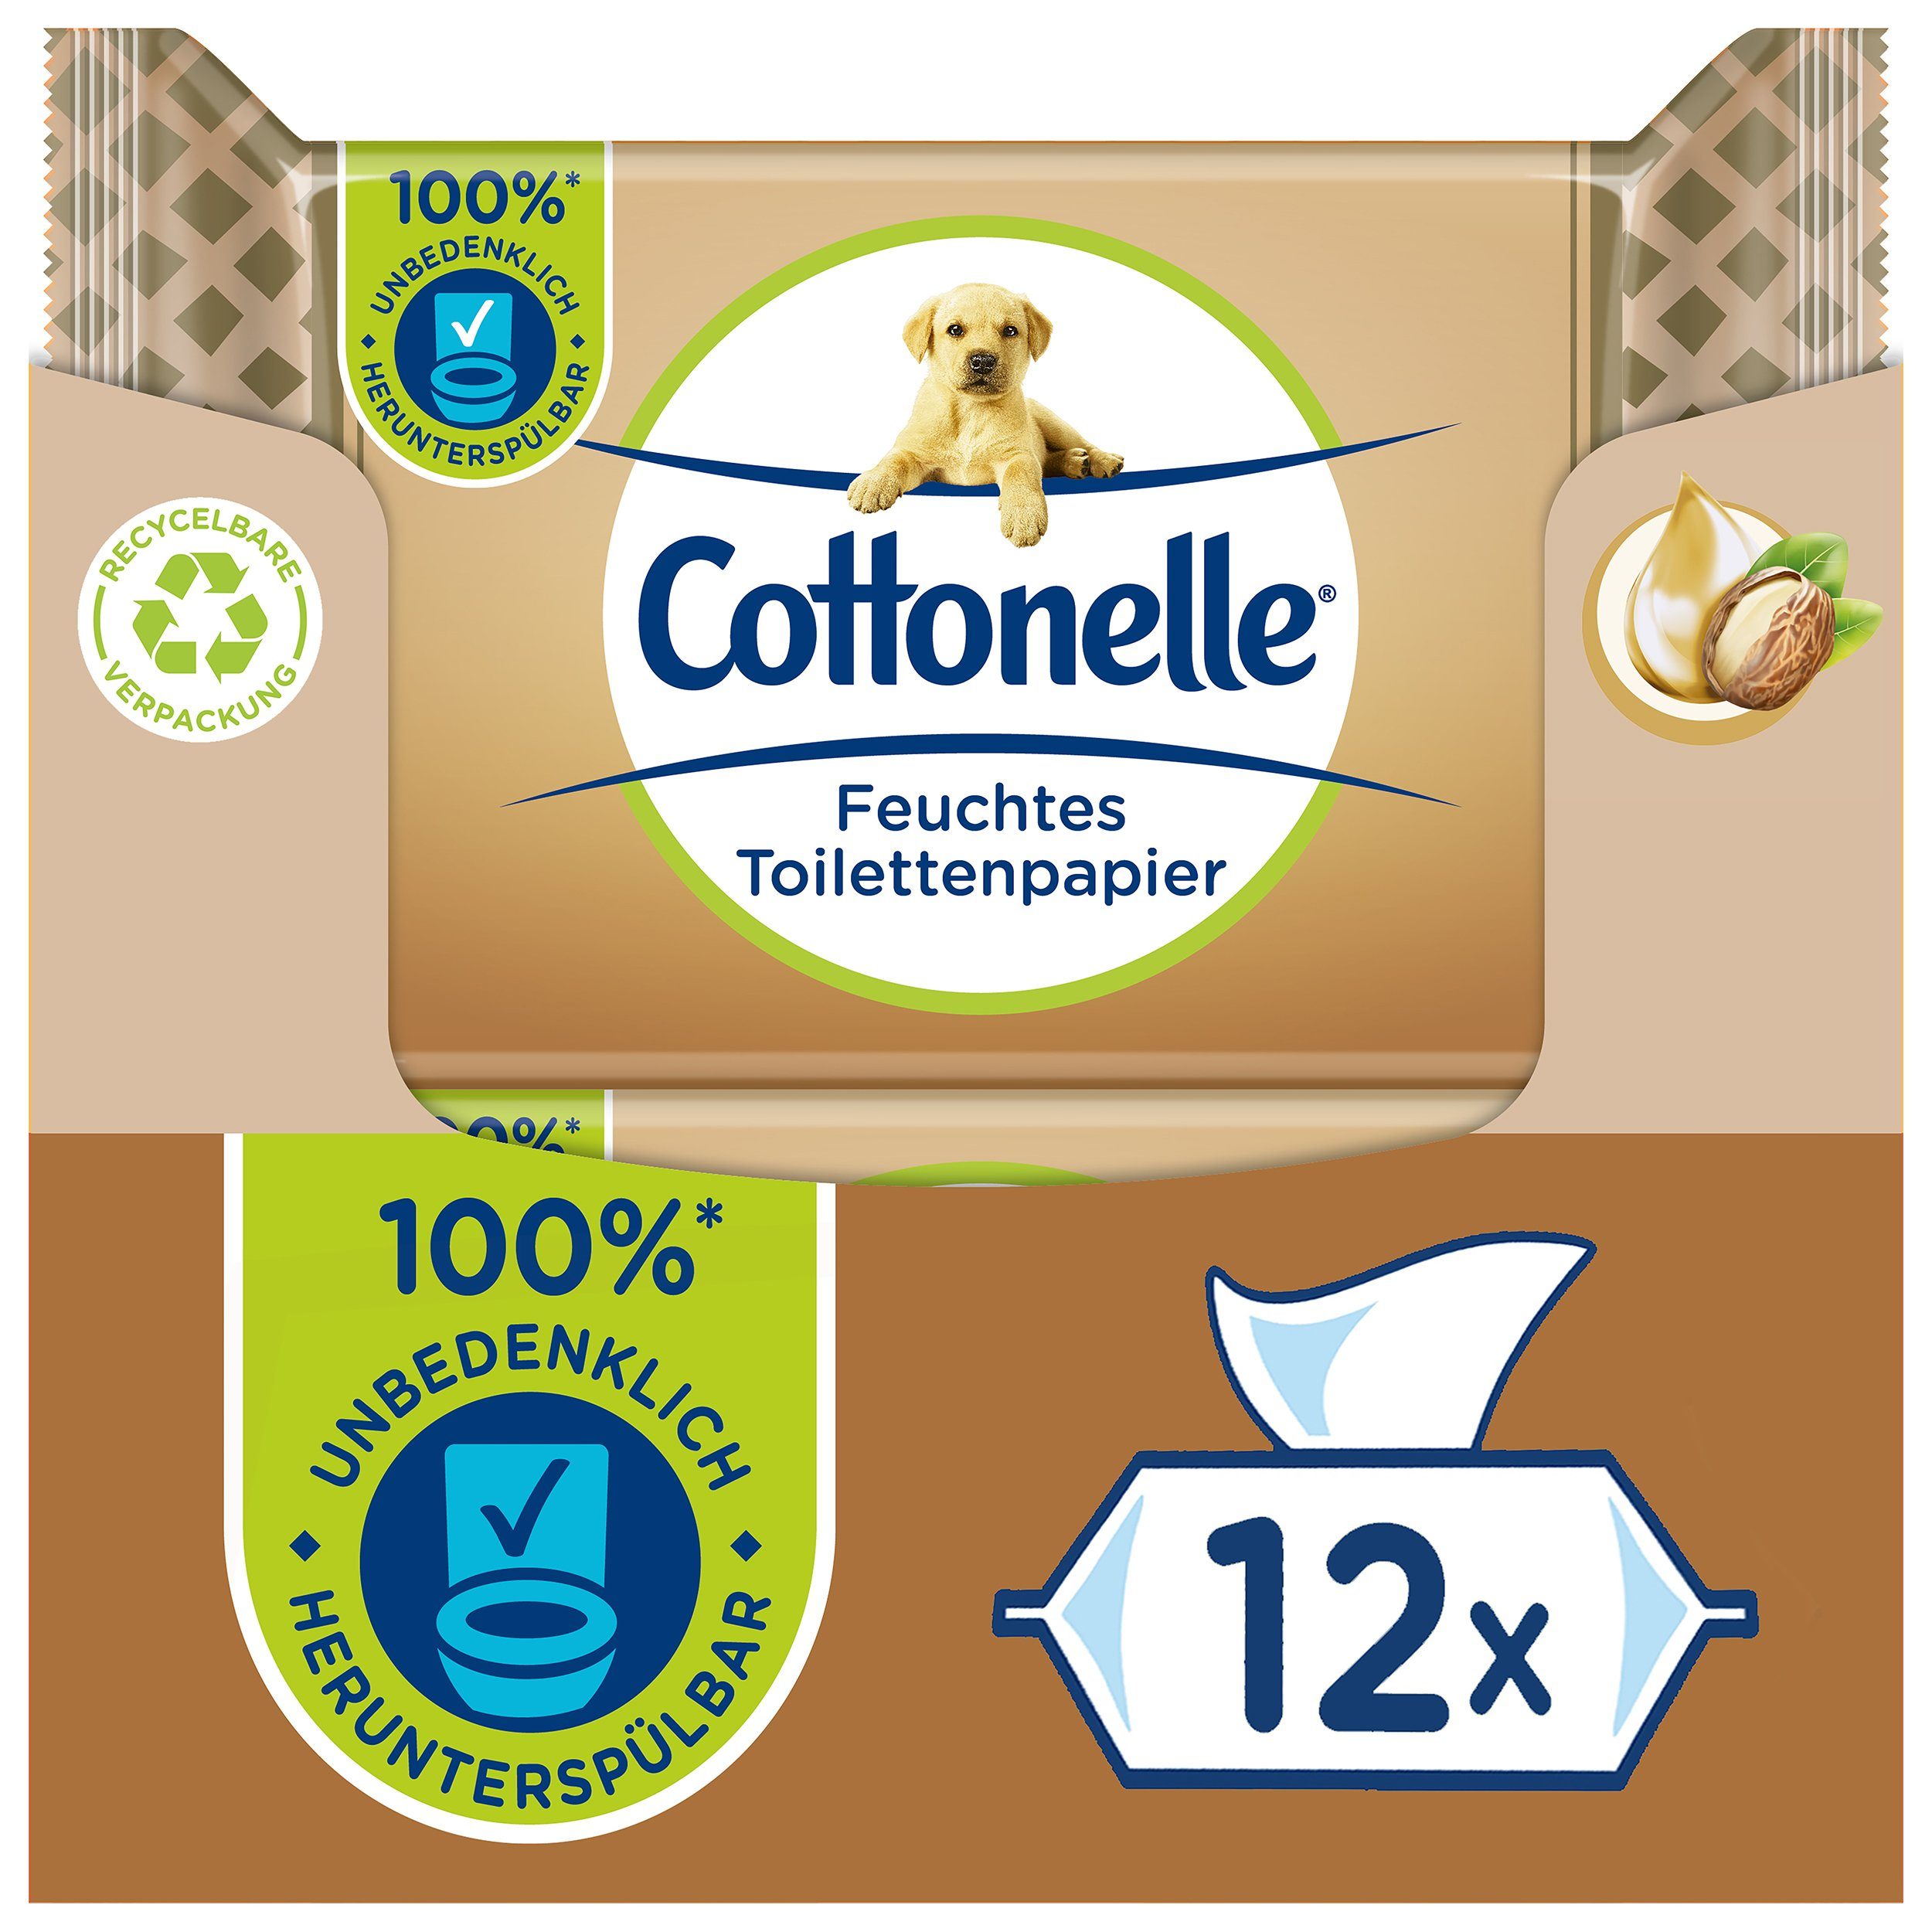 Cottonelle® Toilettenpapier Feuchtes Toilettenpapier Kaschmir & Shea Butter 12 x 42 Tücher (Vorratspackung 12 x 42 Tücher), feuchte Toilettentücher